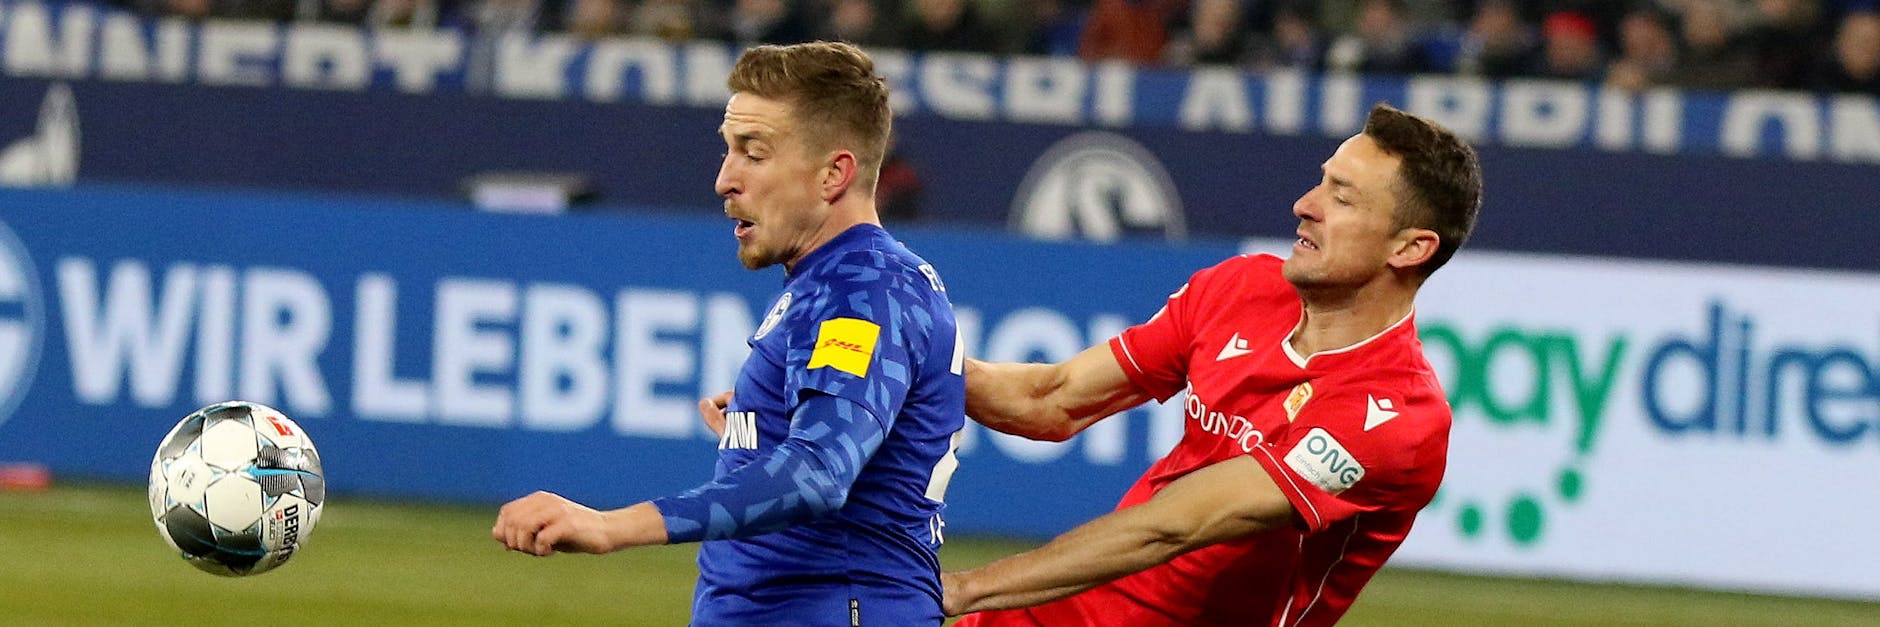 Unions Christian Gentner (r.) - hier im Duell mit Schalkes&nbsp;Bastian Oczipka - steht gegen Freiburg vor seinem Startelf-Comeback.